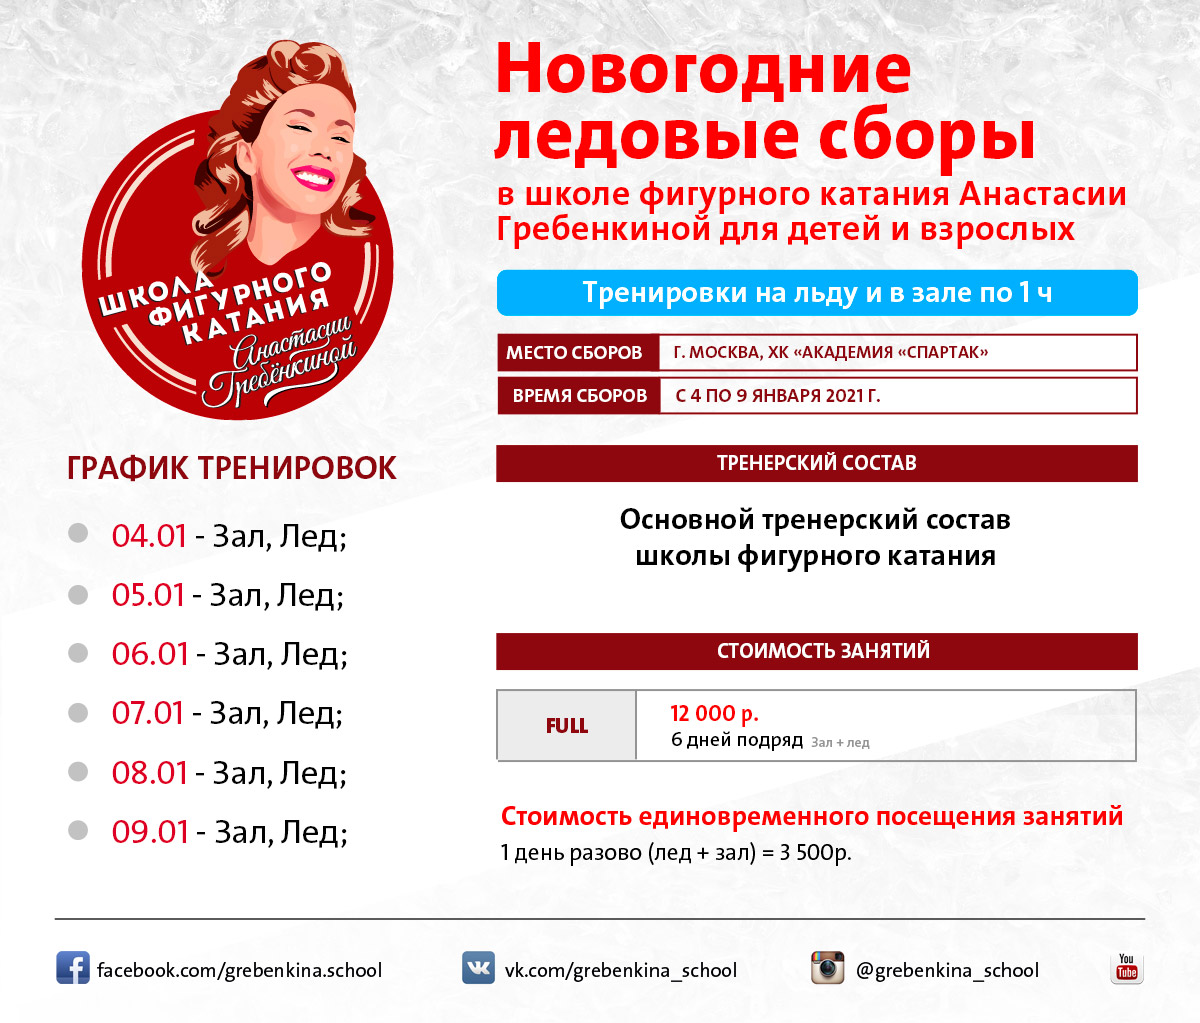 Новогодние ледовые сборы для фигуристов с 4 по 9 января в ШФК Анастасии Гребенкиной